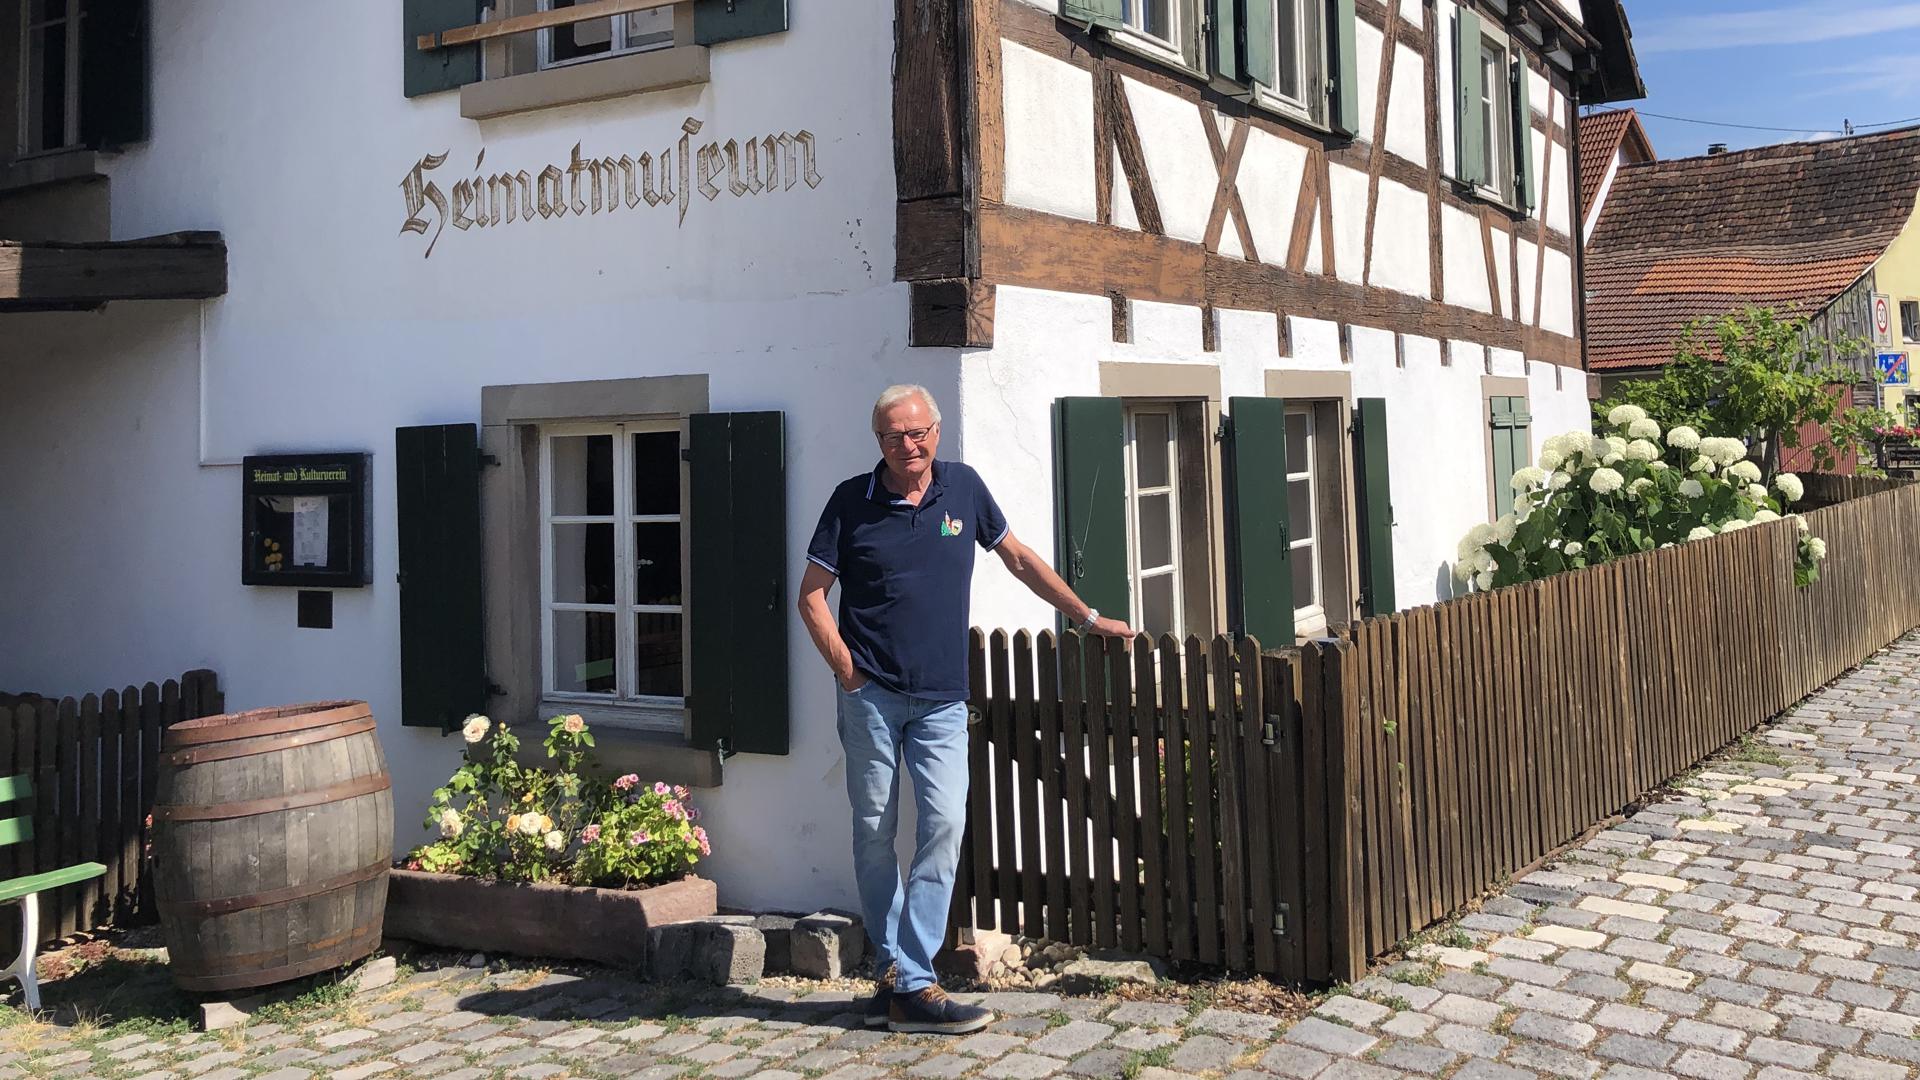 Helmut Reiß steht vor dem schön gerichteten Fachwerkhaus, das als Heimatmuseum genutzt wird.